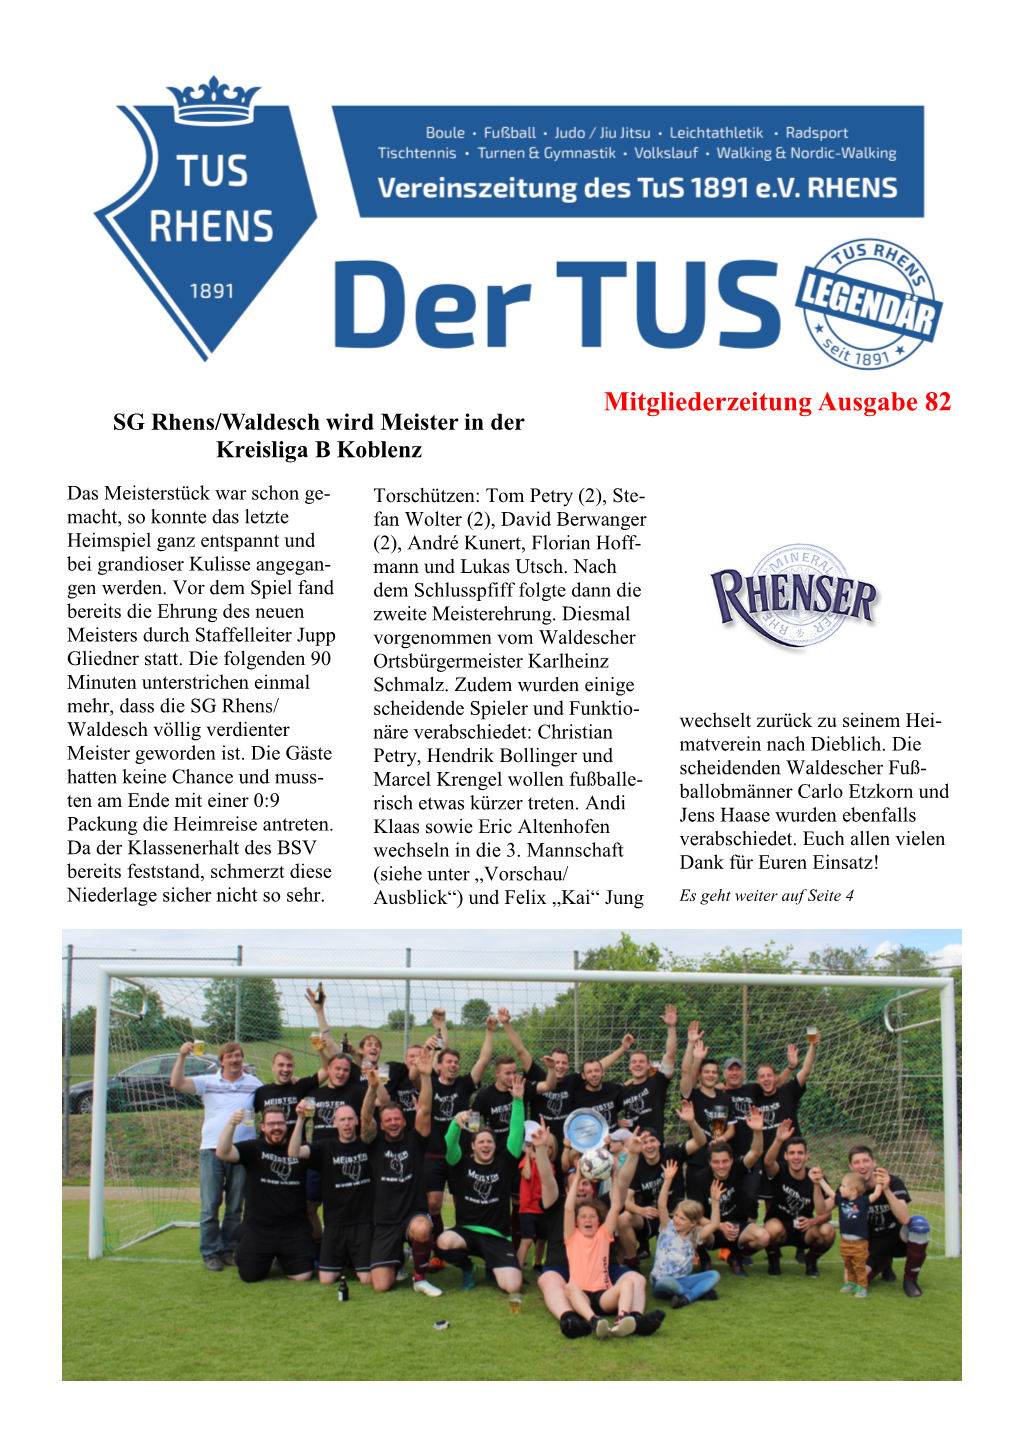 Mitgliederzeitung Ausgabe 82 SG Rhens/Waldesch Wird Meister in Der Kreisliga B Koblenz